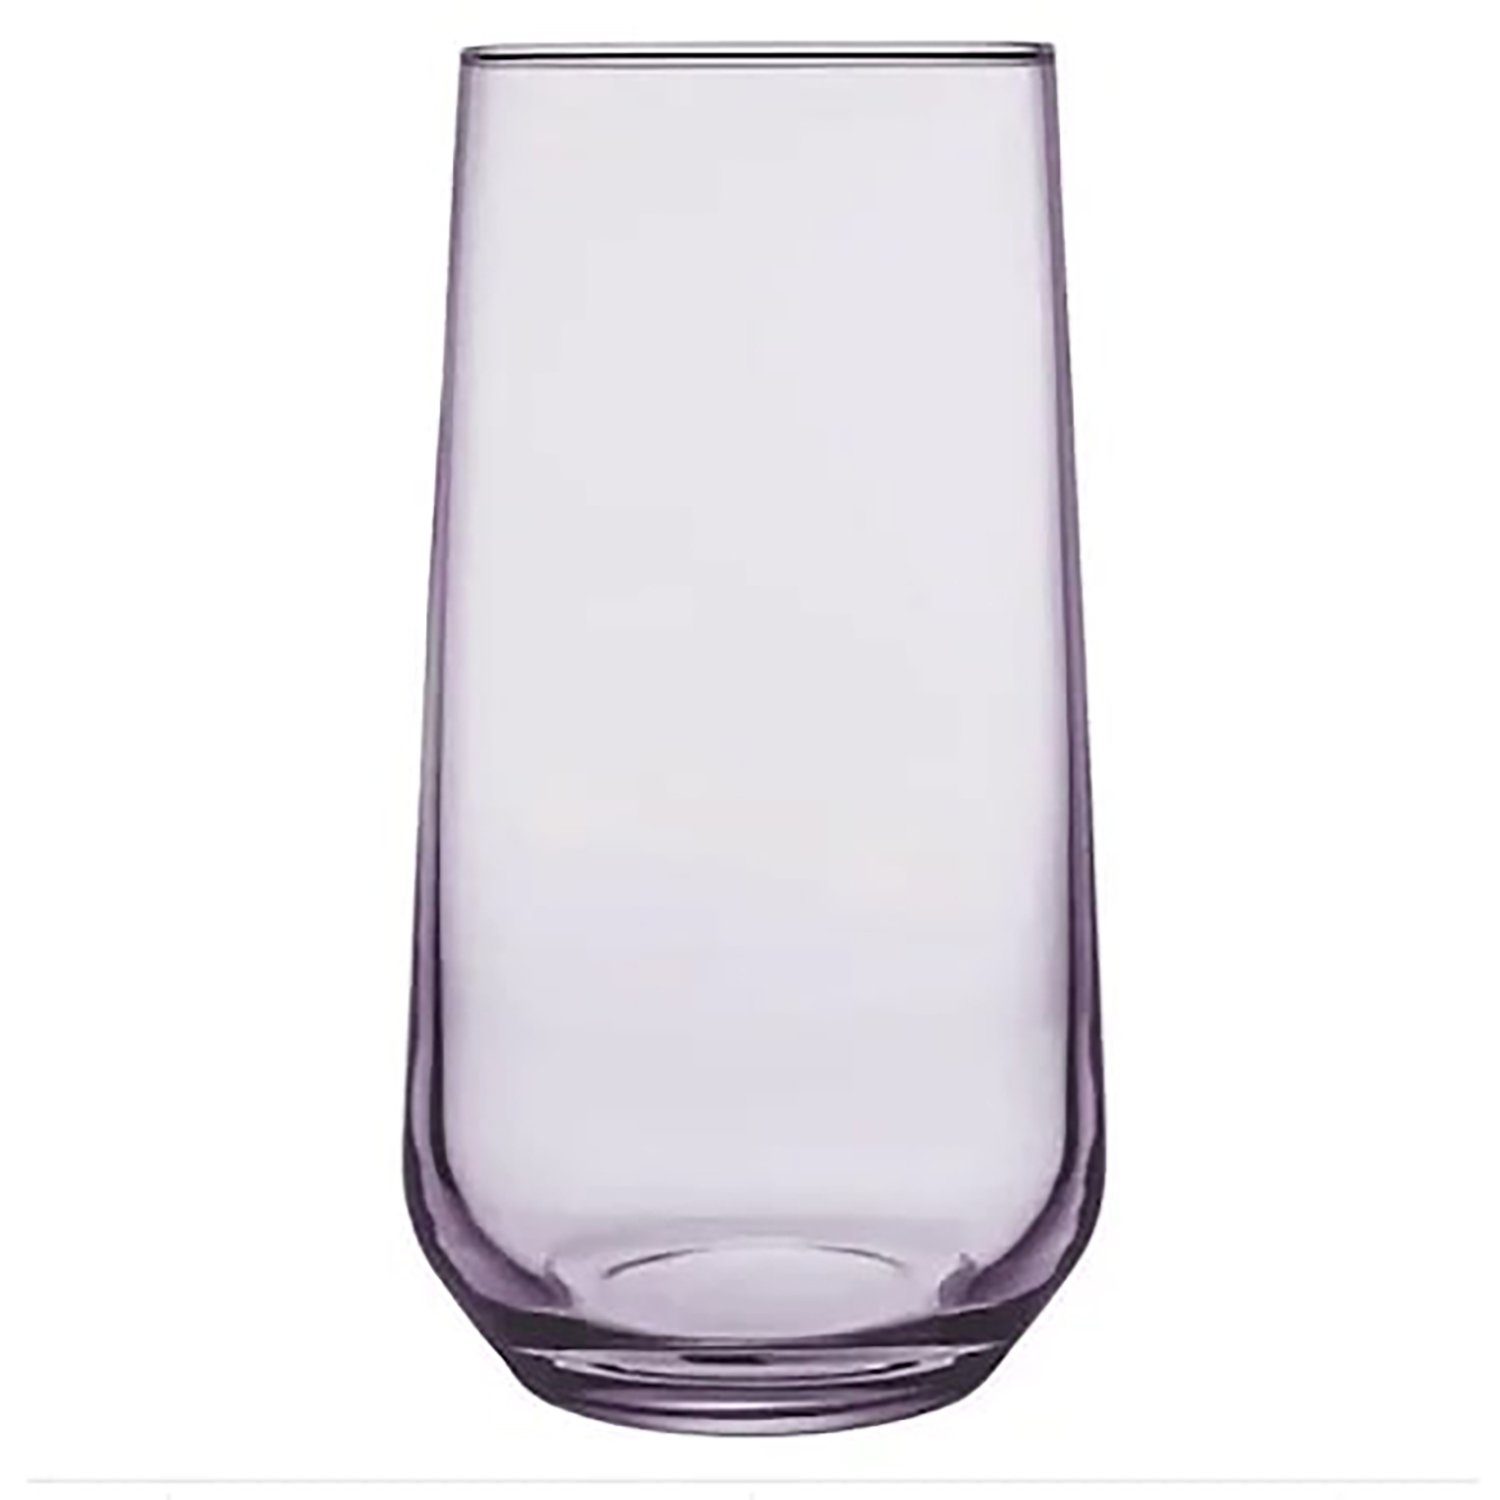 Pasabahce Glas Longdrinkgläser Lila, Trinkgläser 3 teilig - Lange Gläser Set 460 ml, Glas